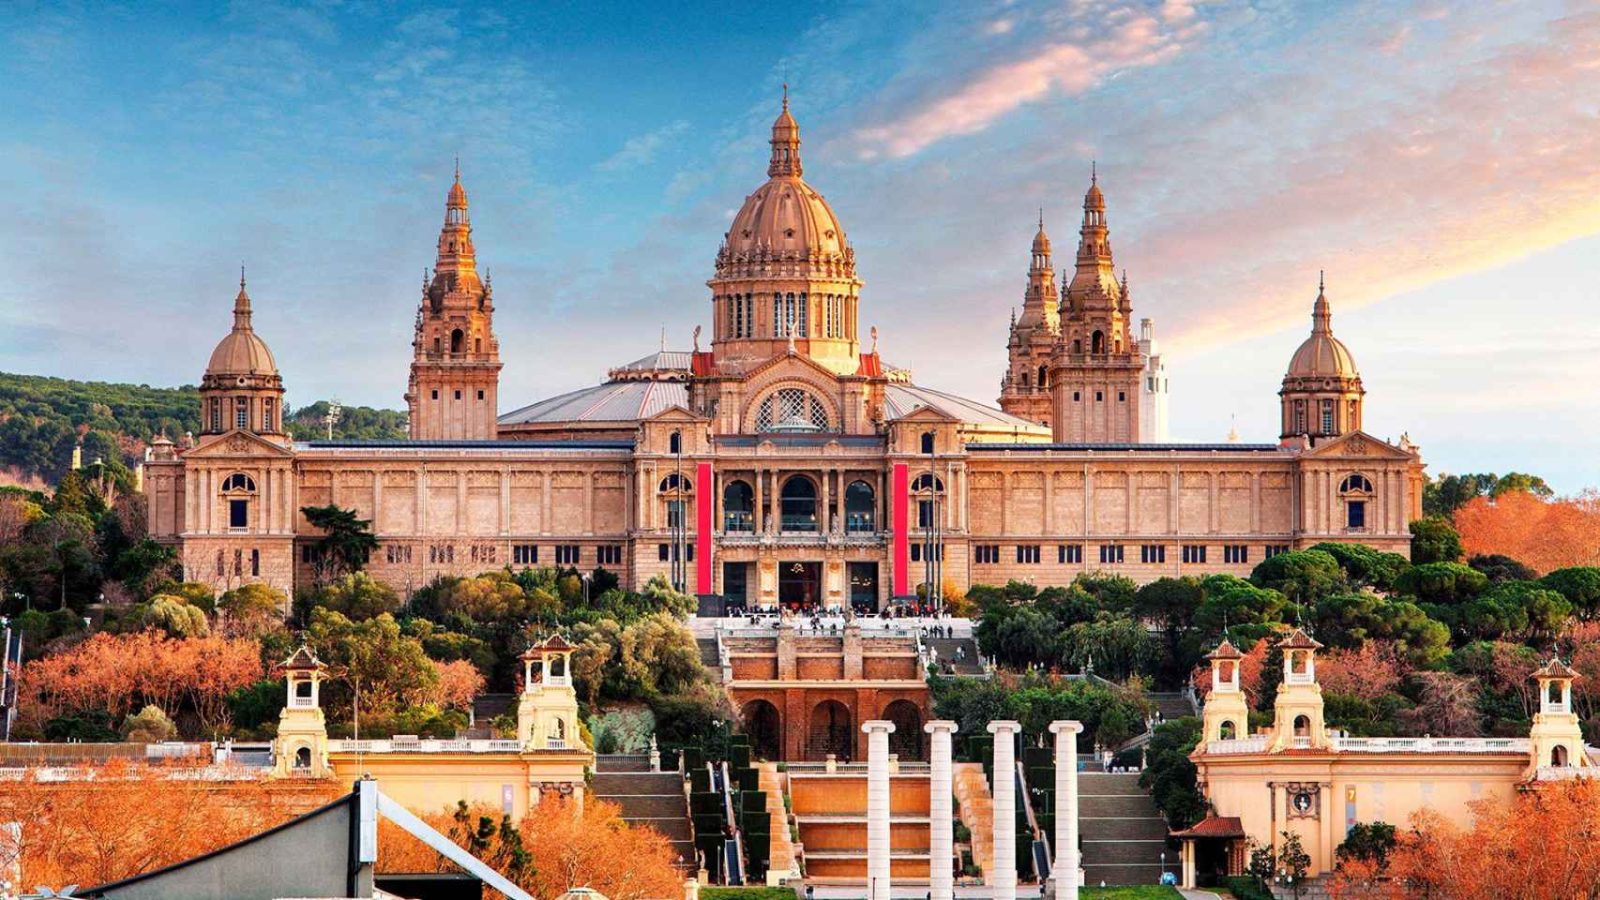 Национальный дворец Барселоны